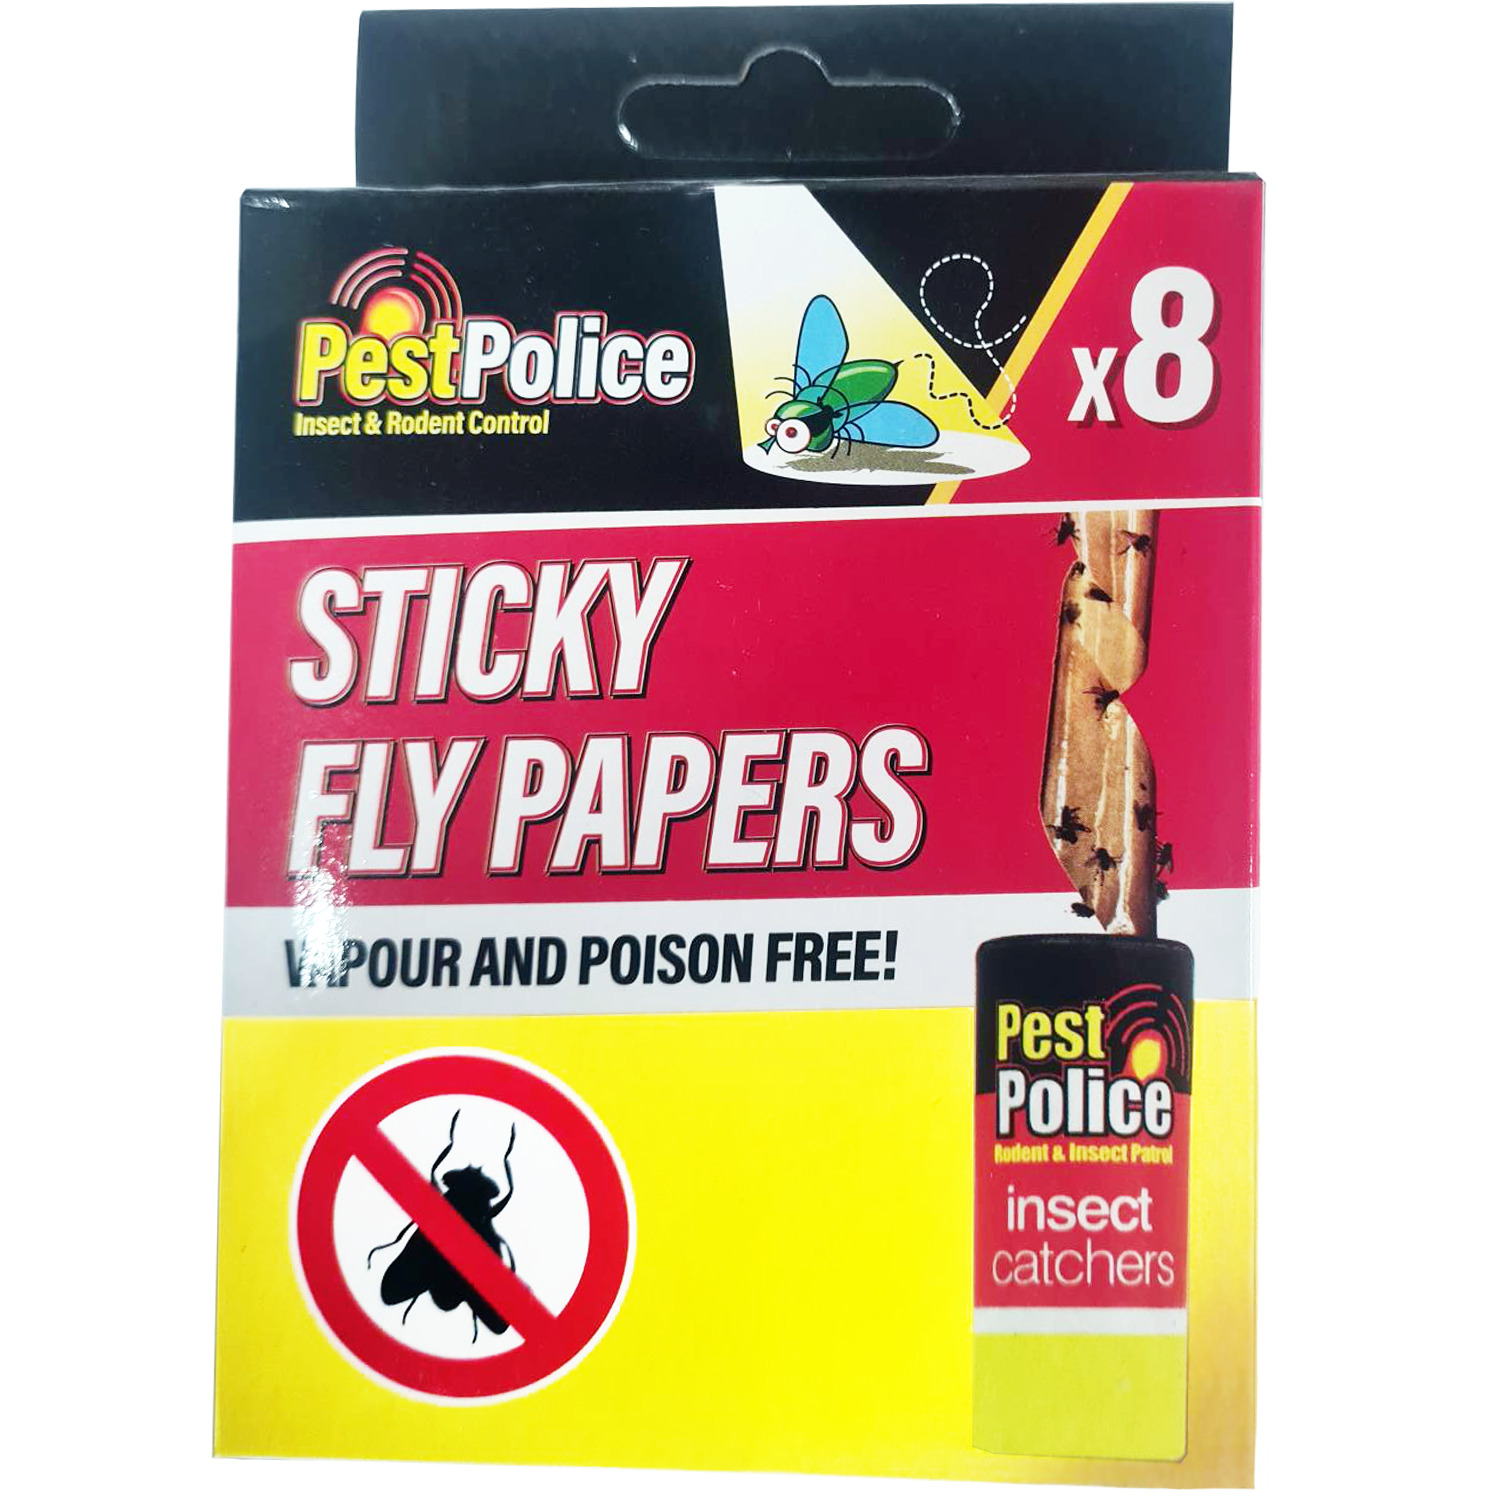 PEST POLICE Pack of 8 Sticky Tape Paper Fly Catchers